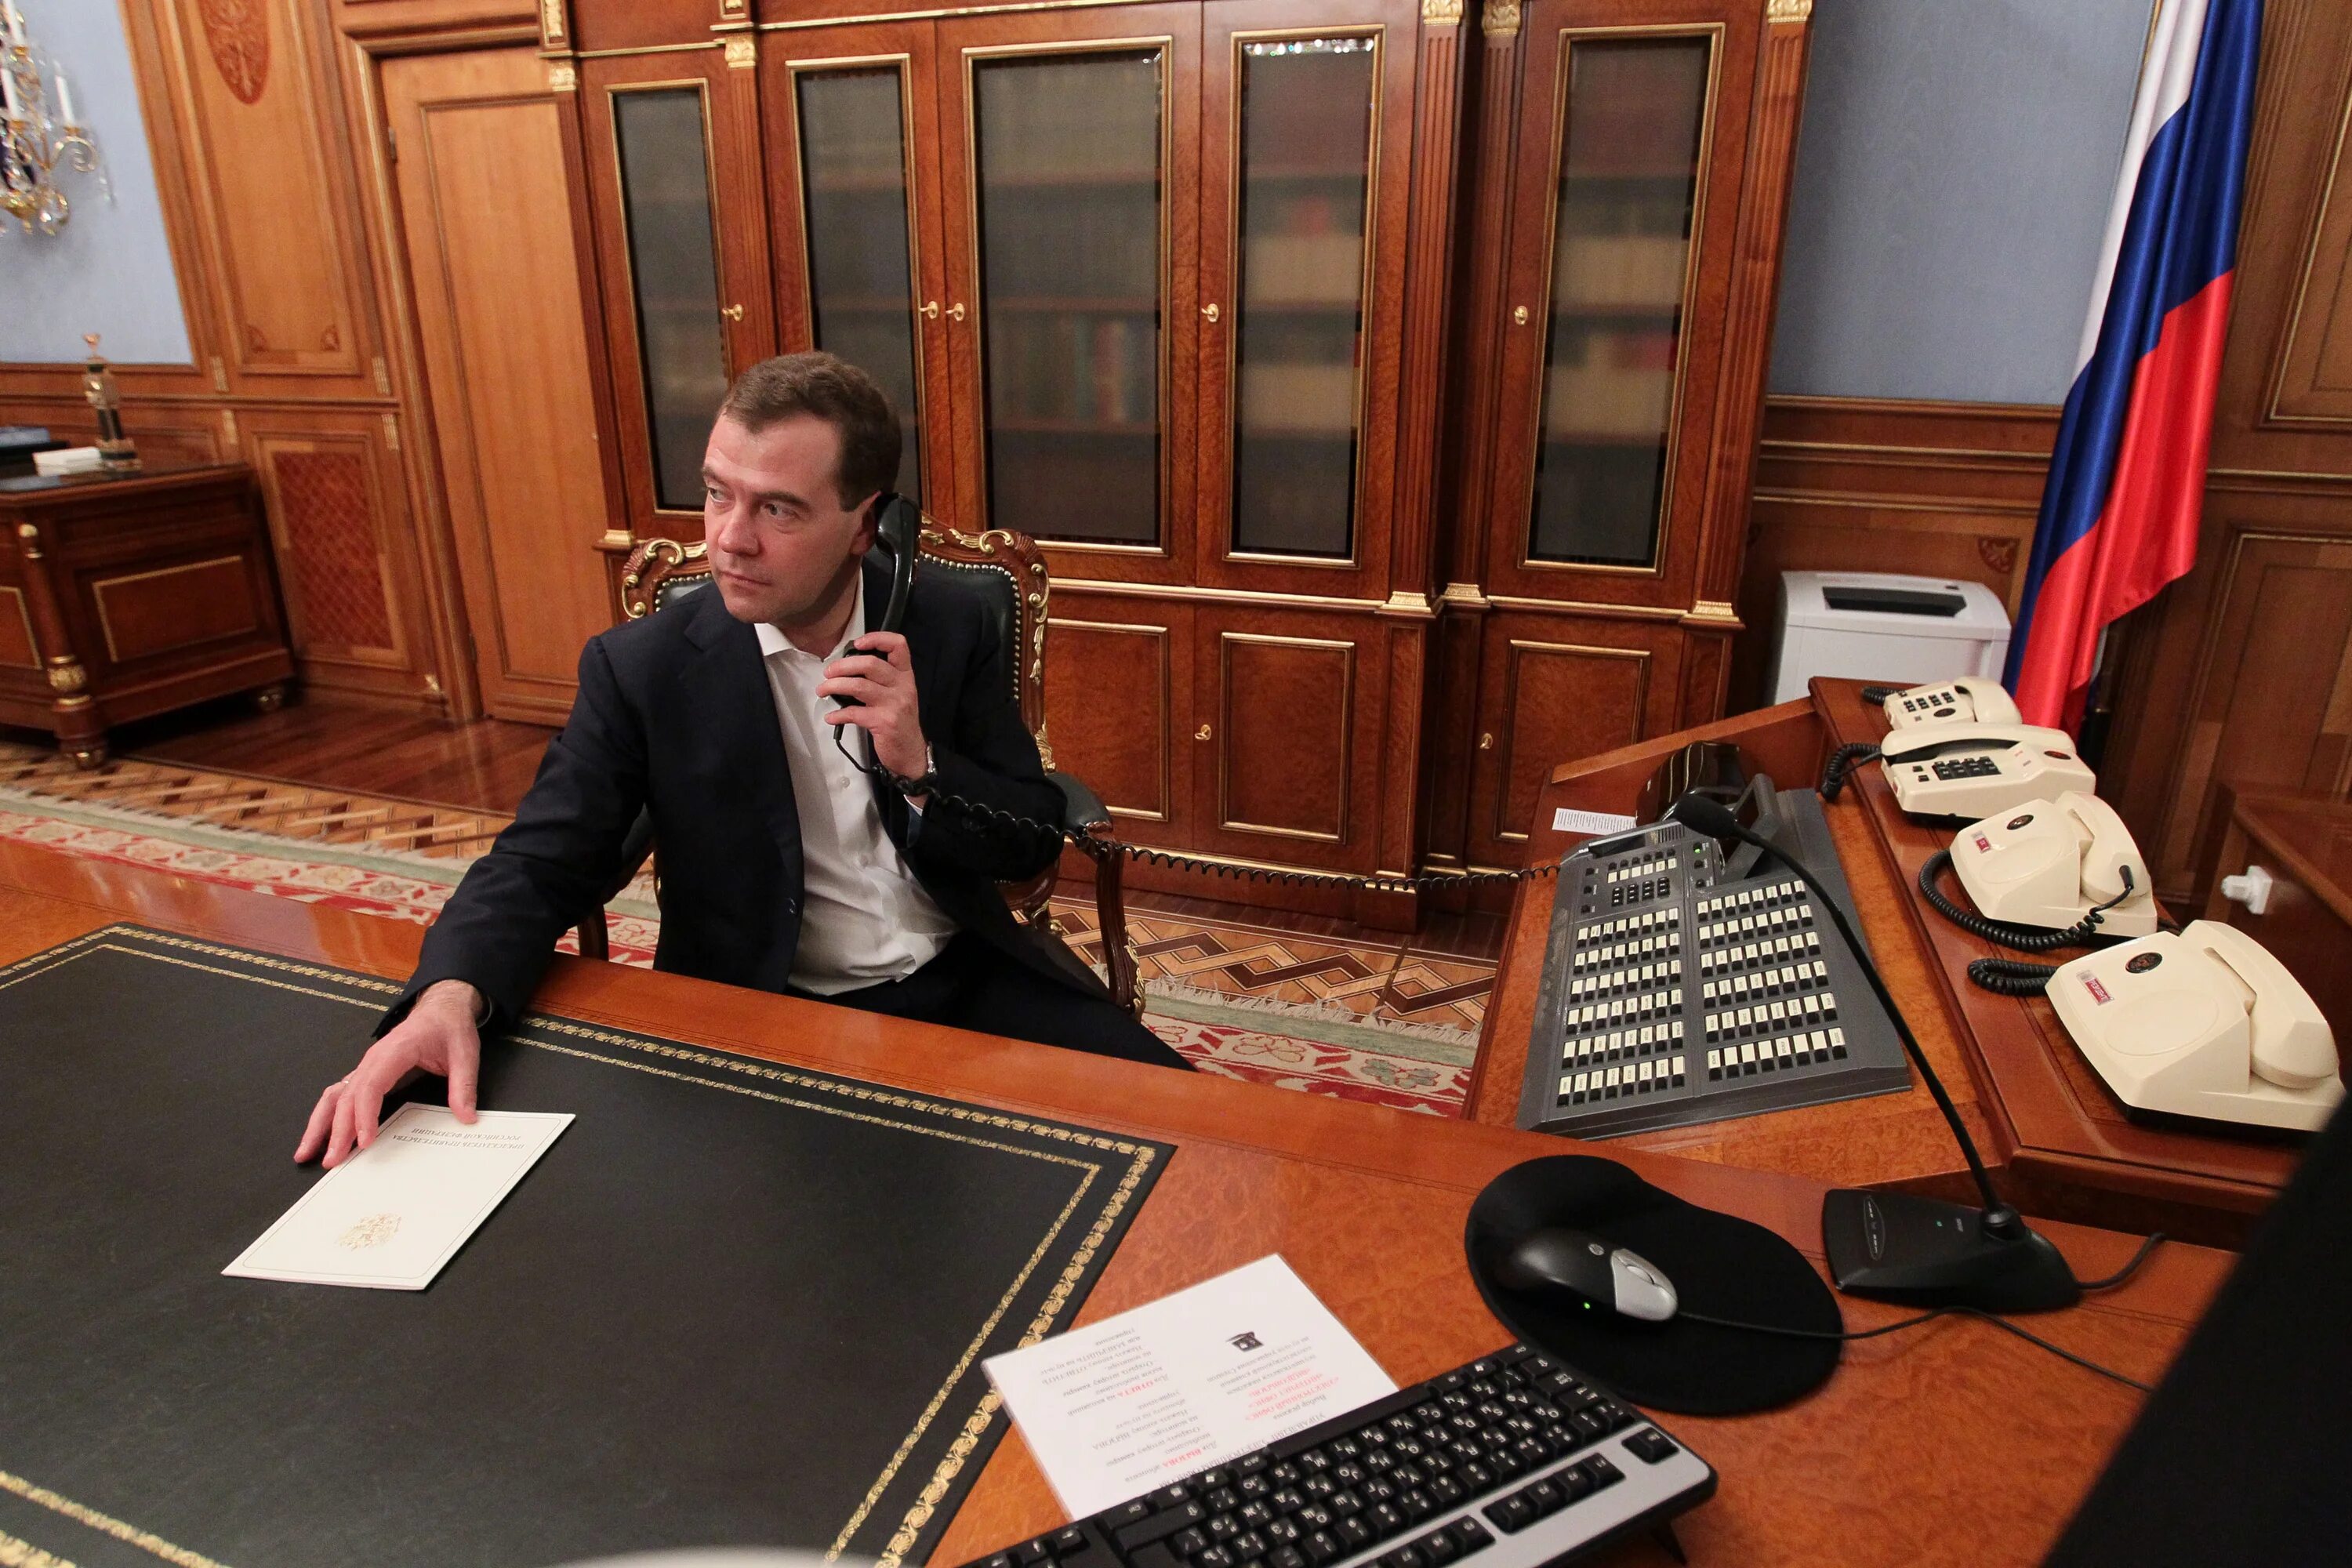 Кабинет премьер министра Дмитрия Анатольевича Медведева. Где живет премьер министр